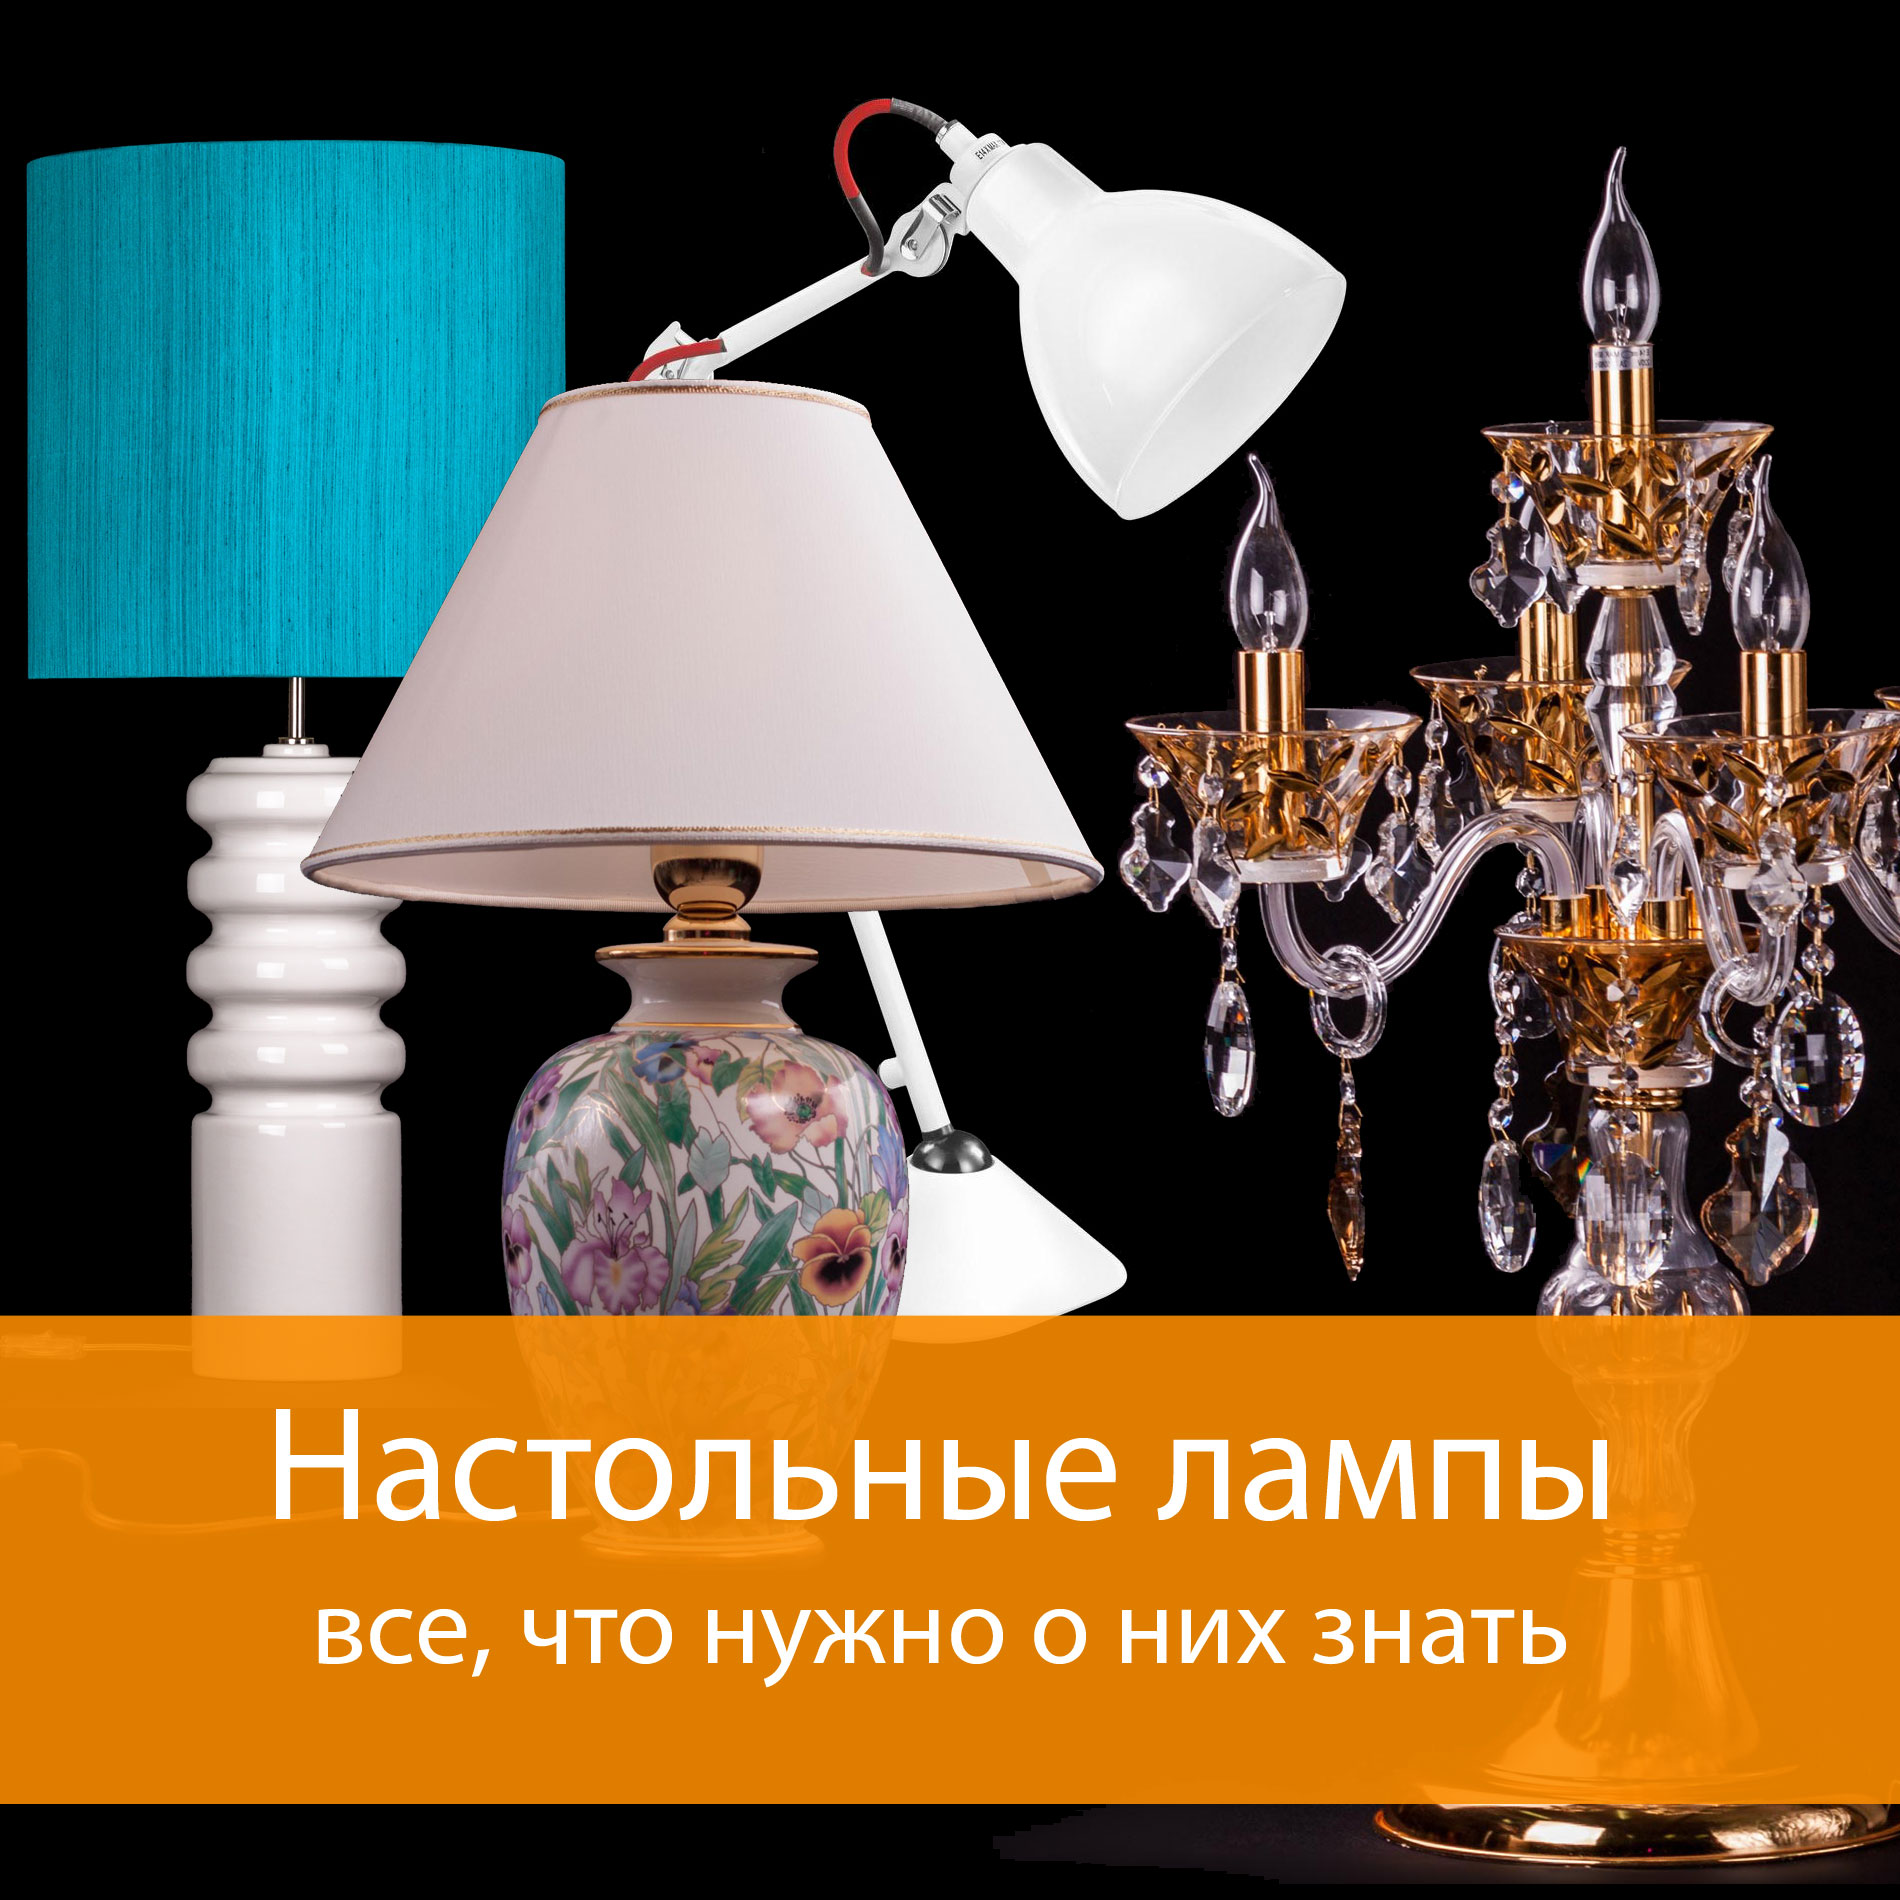 Настольные лампы - какие бывают и что полезно о них знать